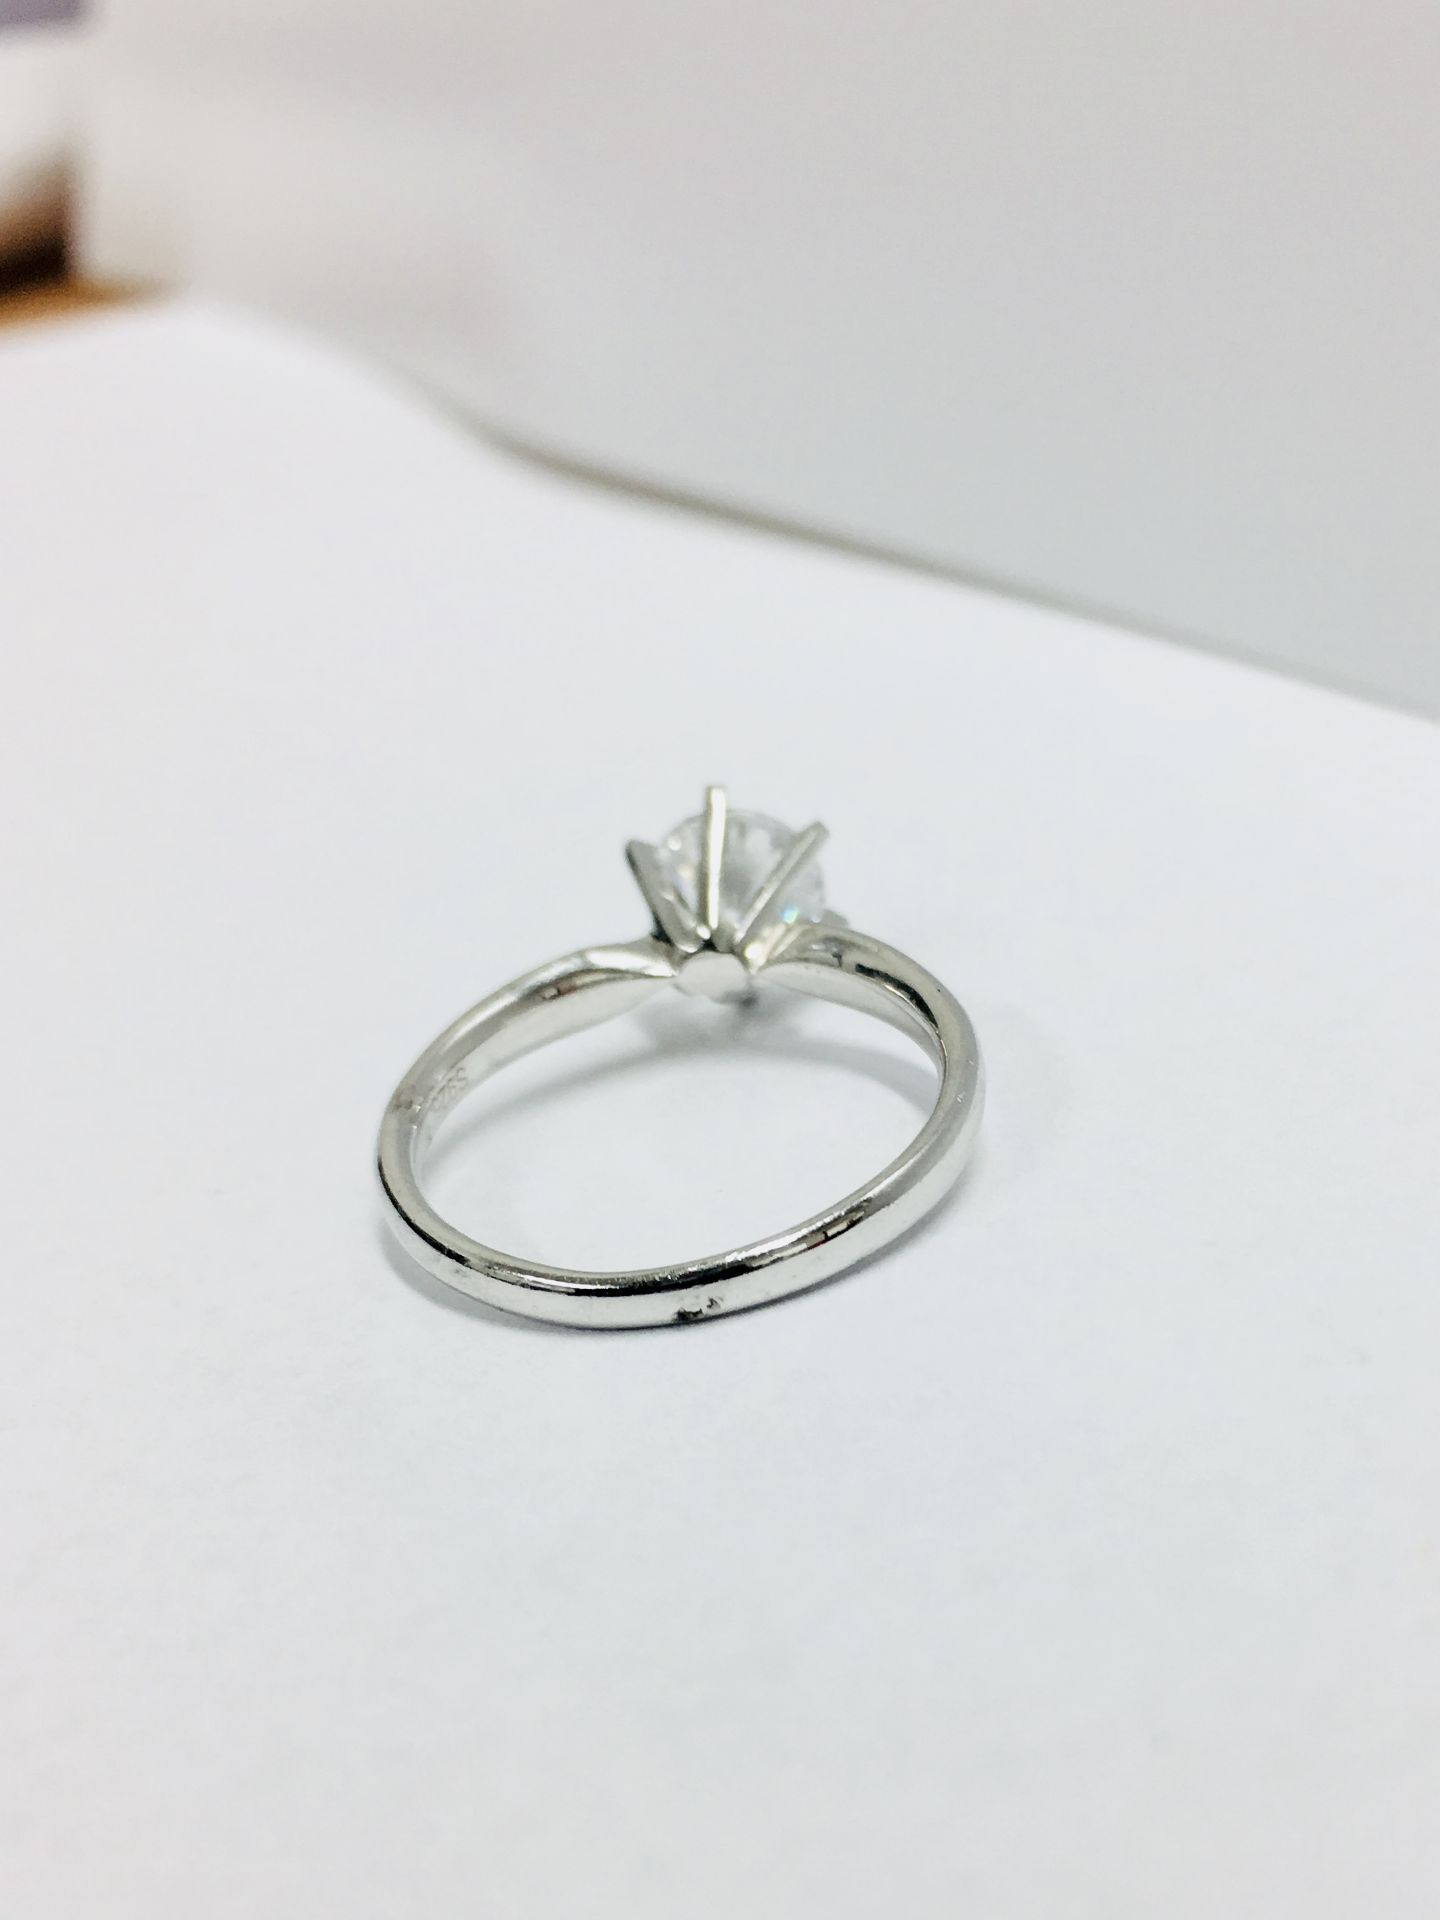 Platinum diamond solitaire ring 6 claw,0.50ct brilliant cut diamond h colour vs clarity enhanced,3. - Bild 3 aus 3